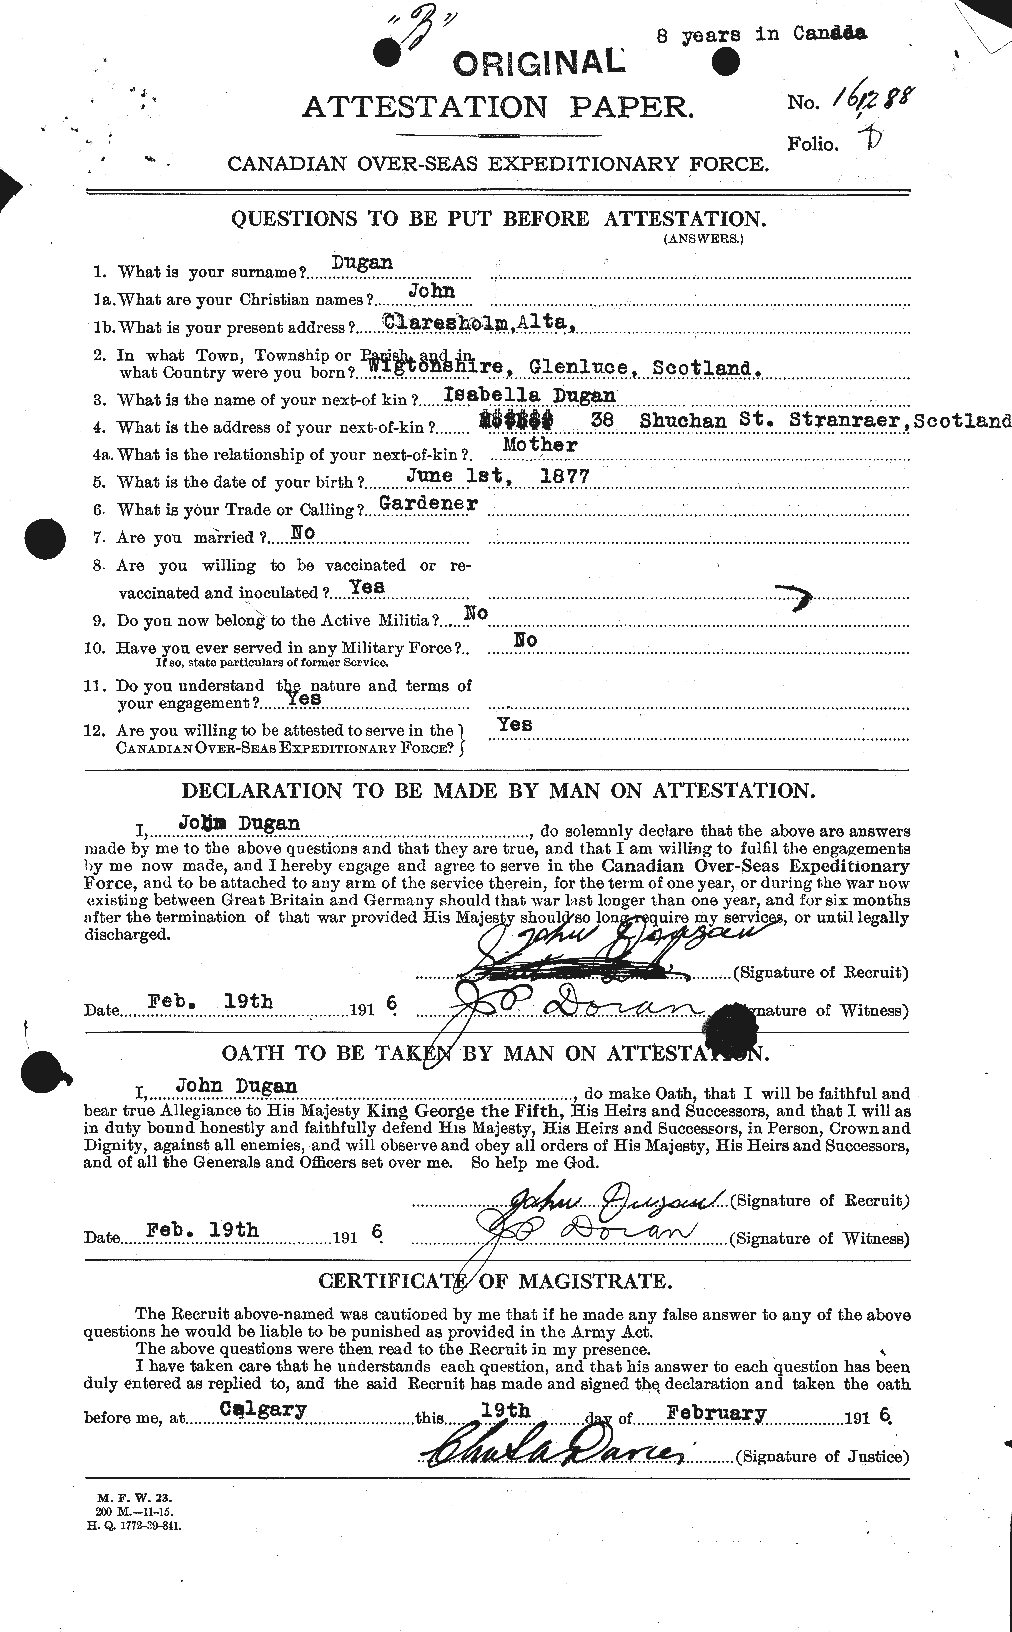 Dossiers du Personnel de la Première Guerre mondiale - CEC 299965a